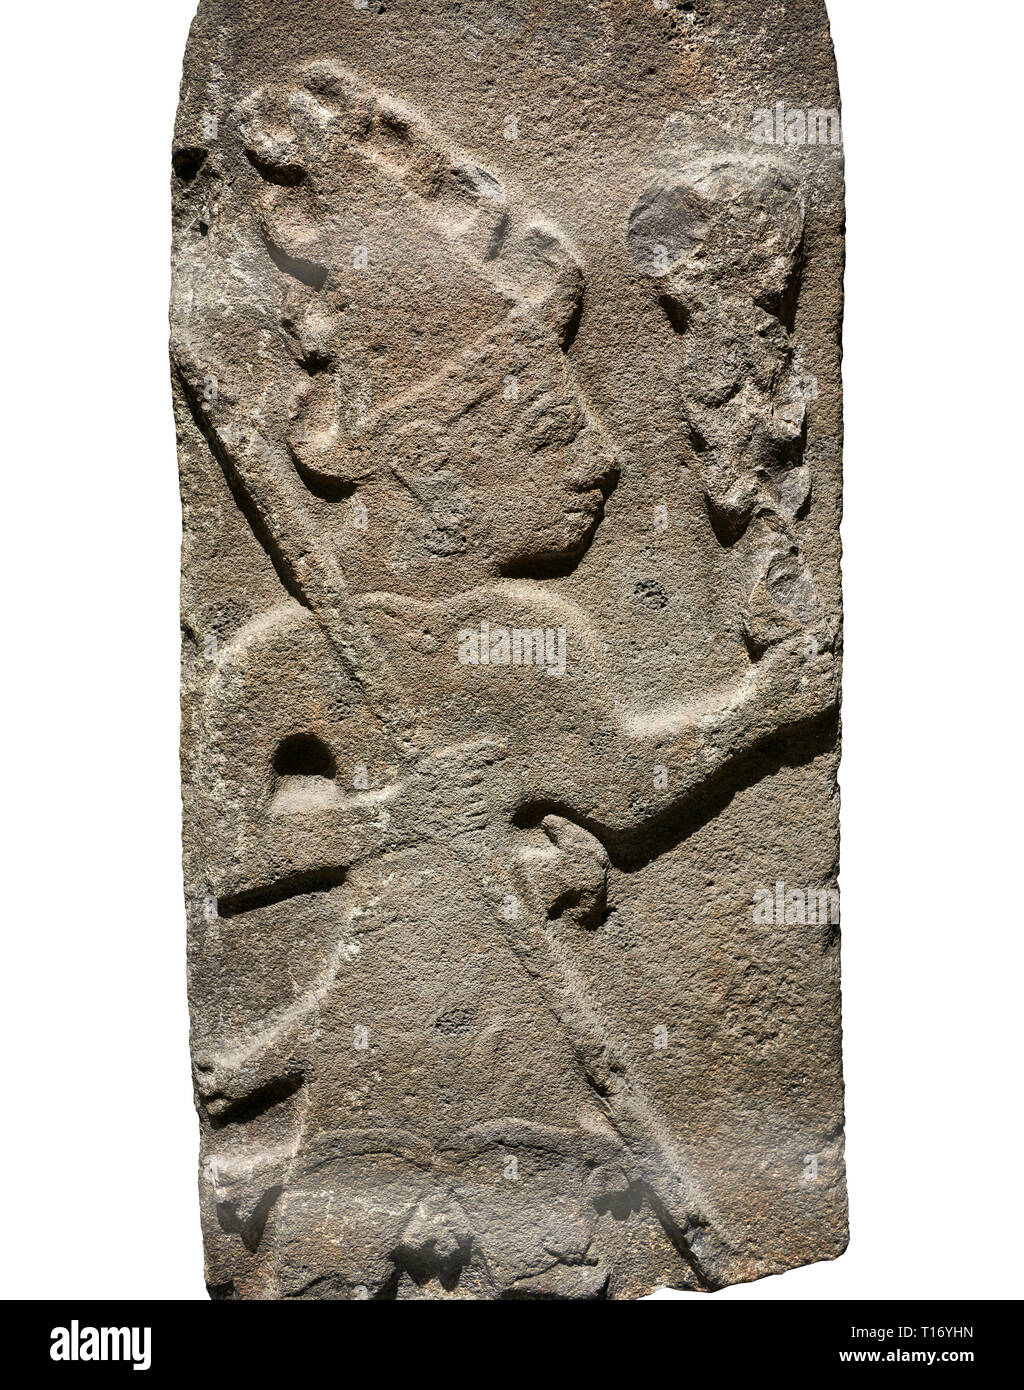 Hittita Rilievo monumentale scultura ofa Dio probabilmente azienda aste parafulmine. Fine periodo Hittita - 900-700 A.C. Adana il Museo di Archeologia, Turchia. Di nuovo Foto Stock